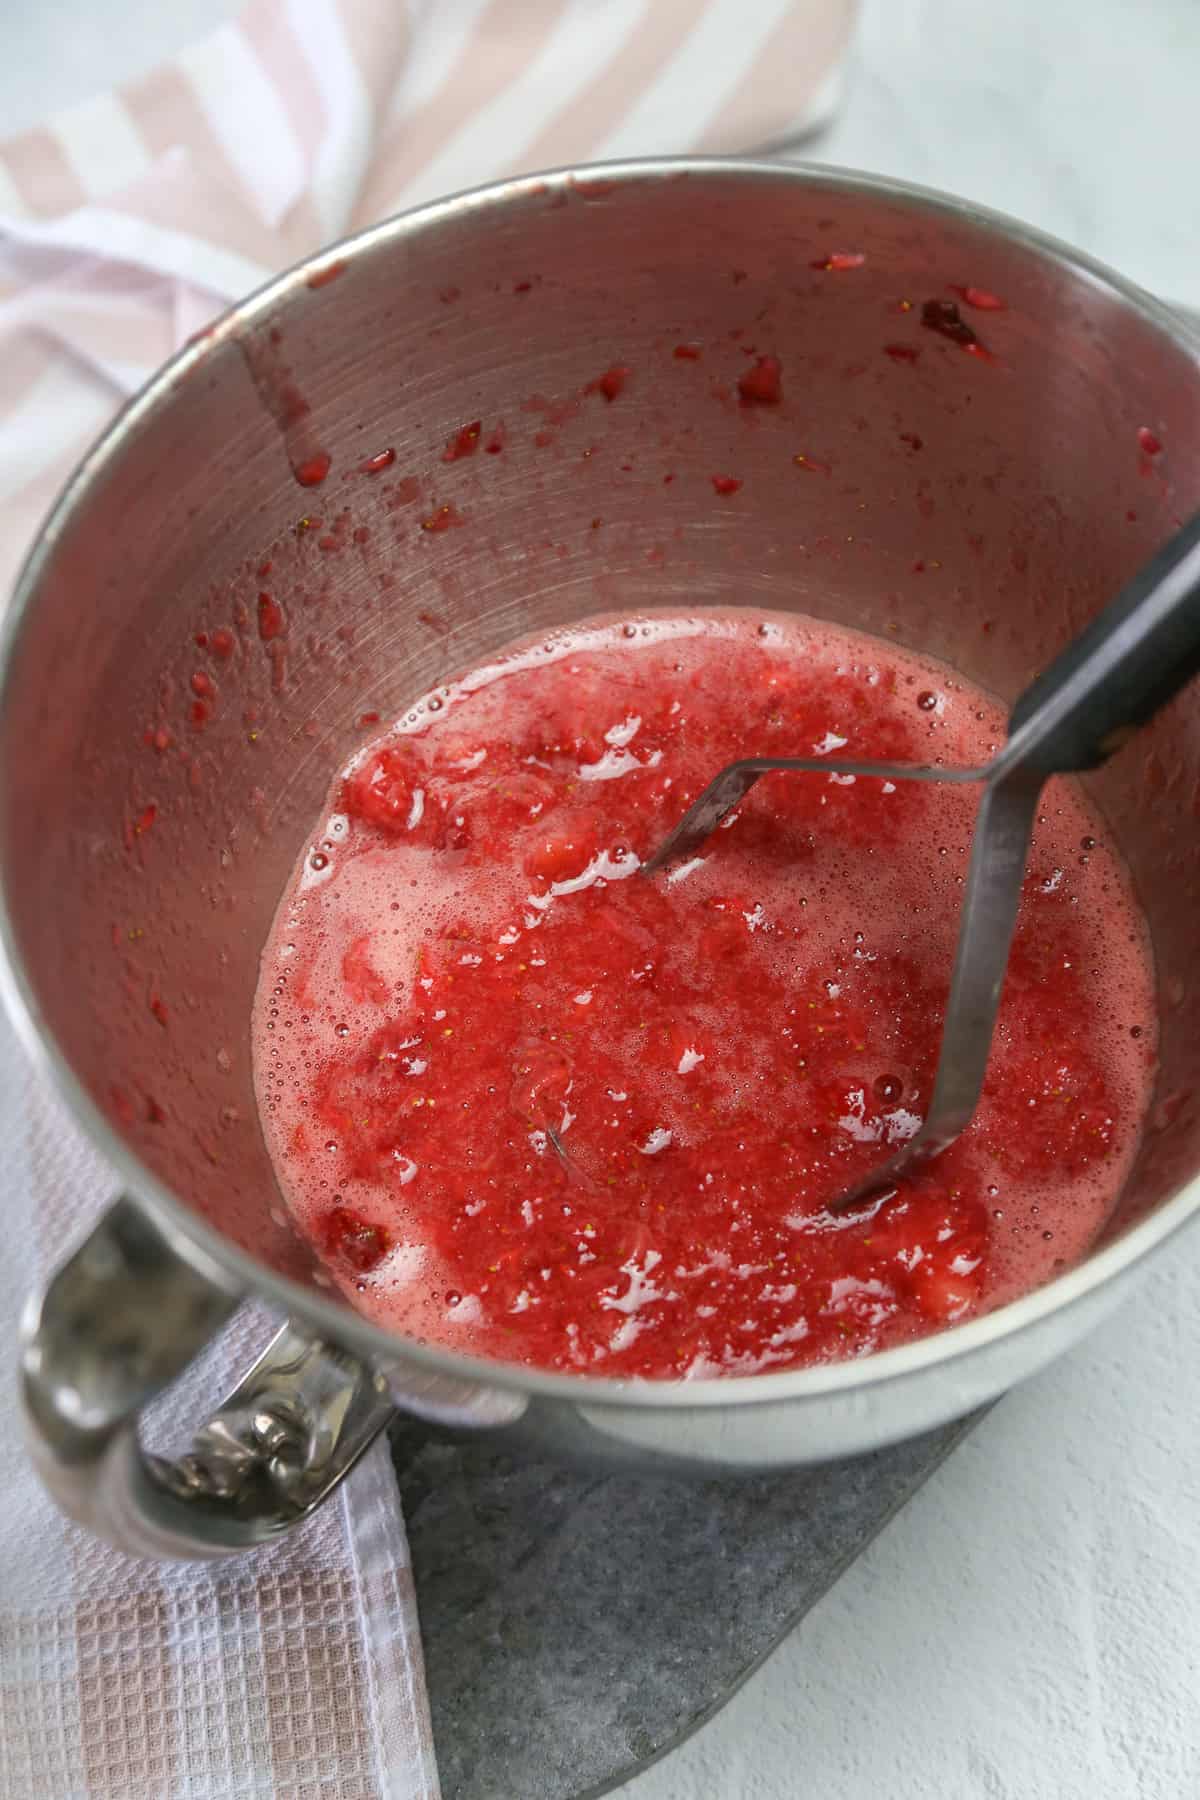 Potato masher crushing strawberries in a metal mixing bowl to make freezer jam.